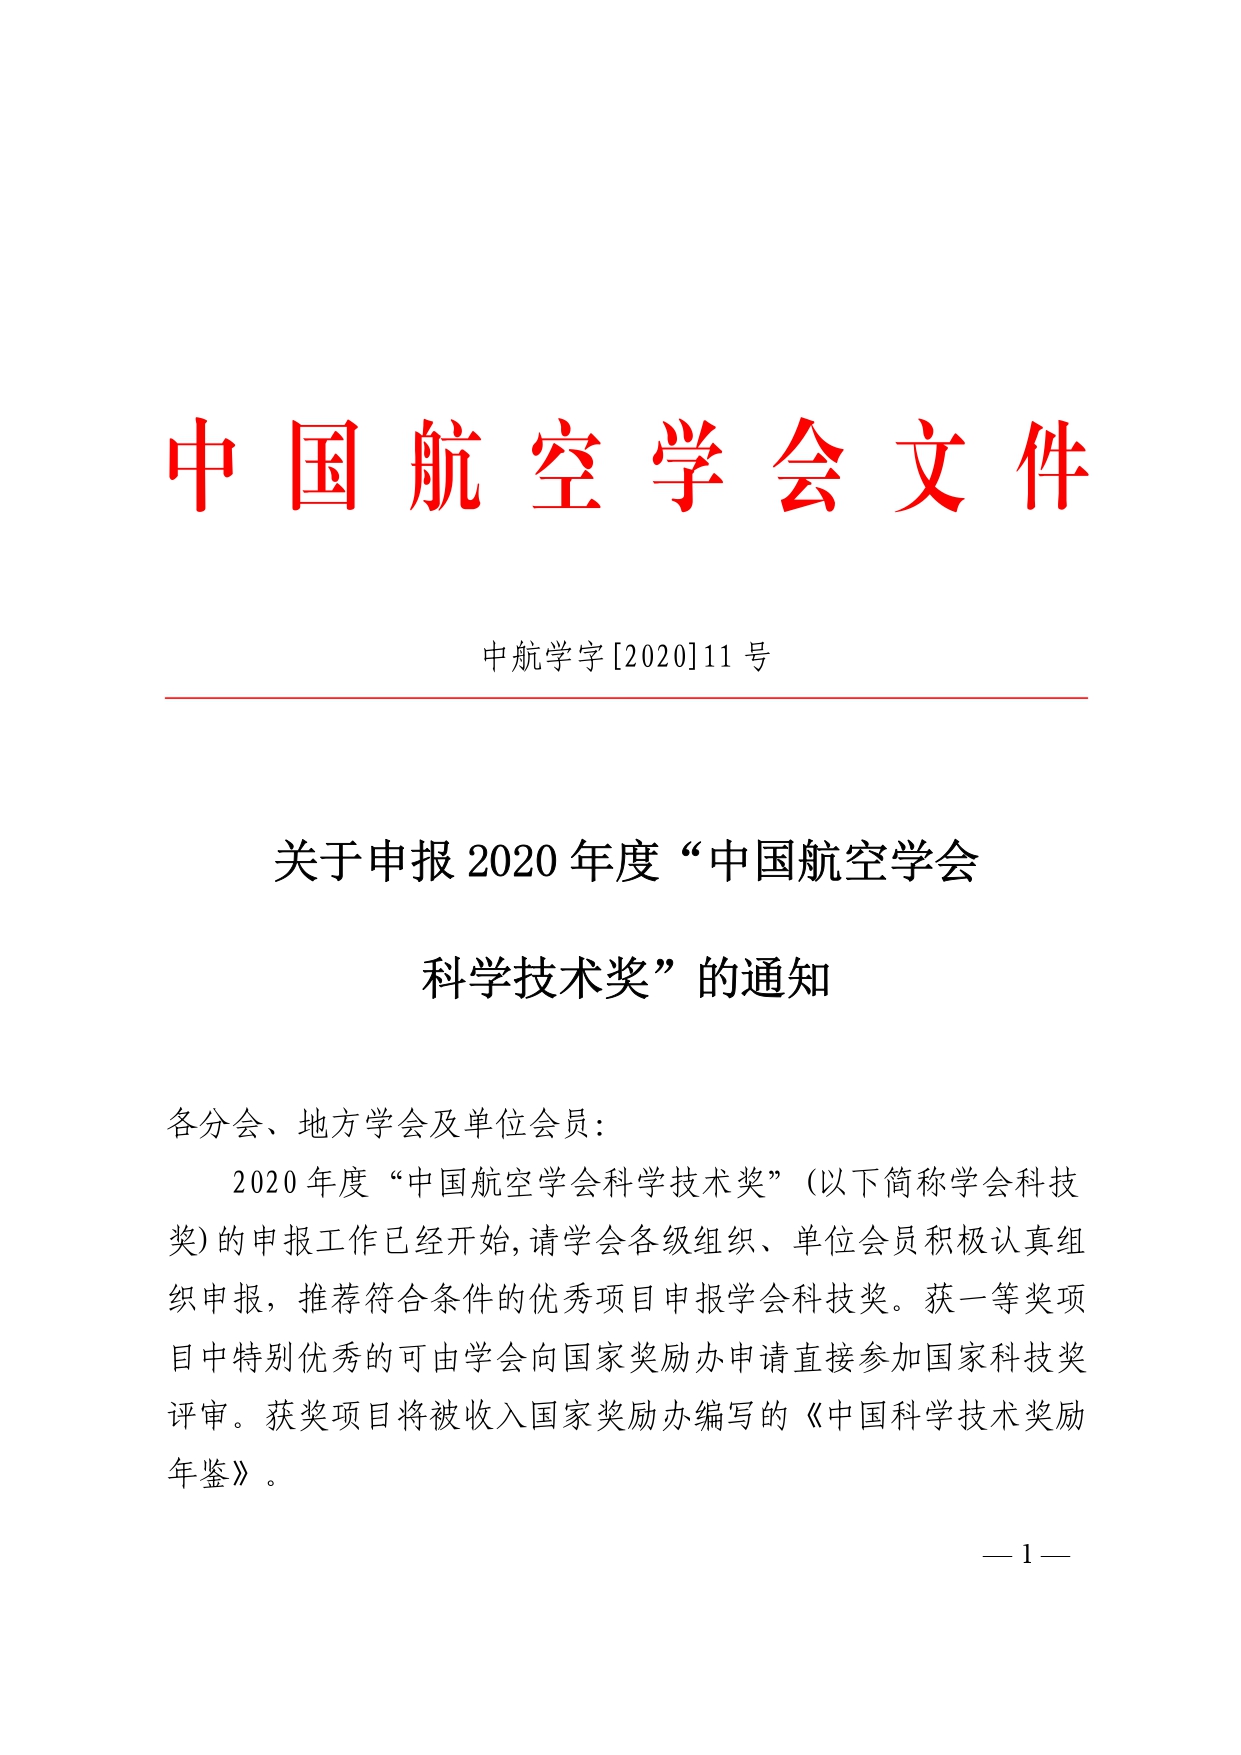 附件1.关于申报2020年度“中国航空学会科学技术奖”的通知_pages-to-jpg-0001.jpg